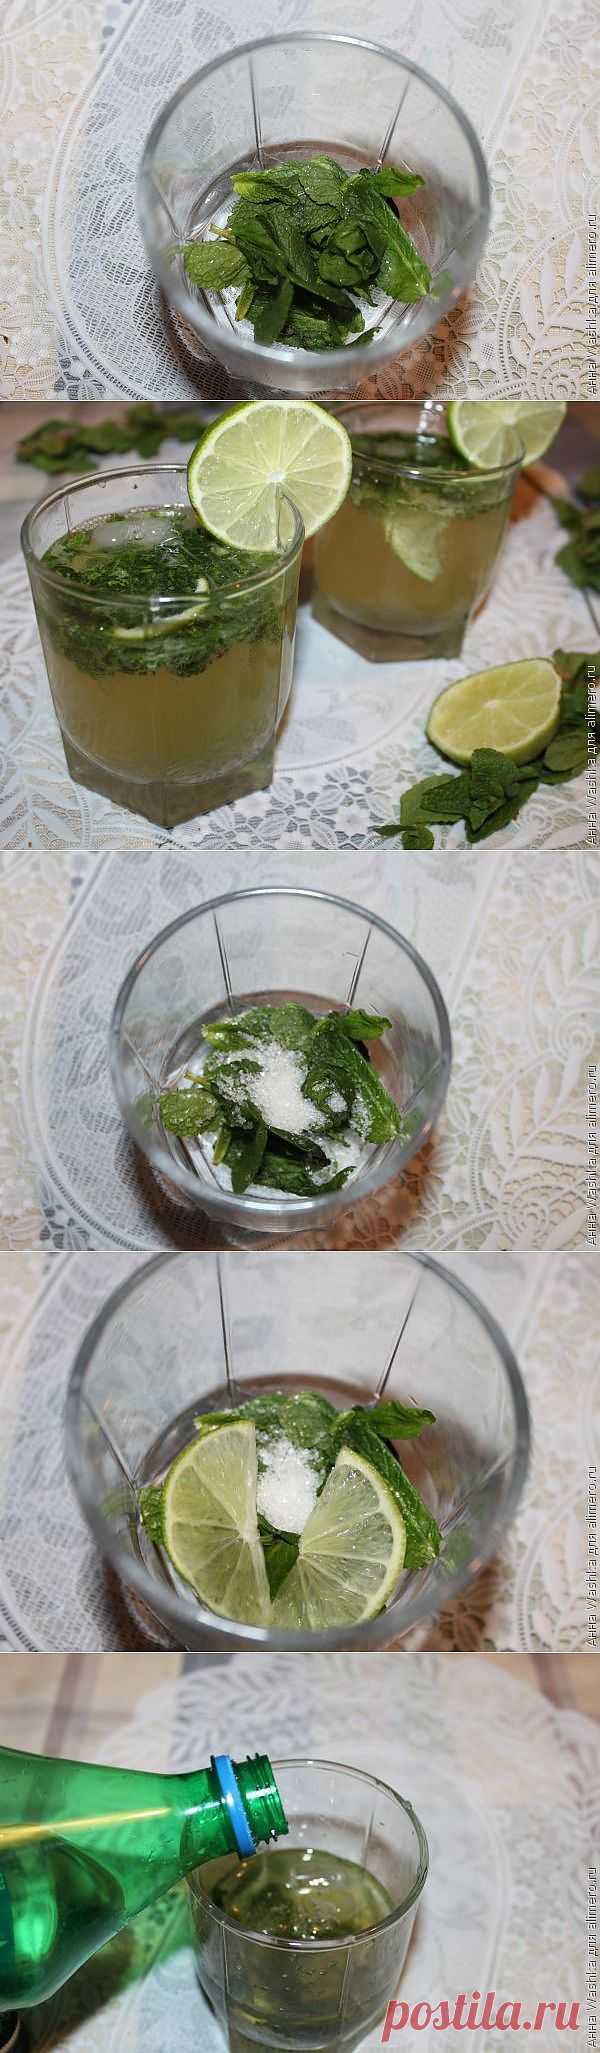 Коктейль Мохито рецепт с мартини / Рецепты с фото